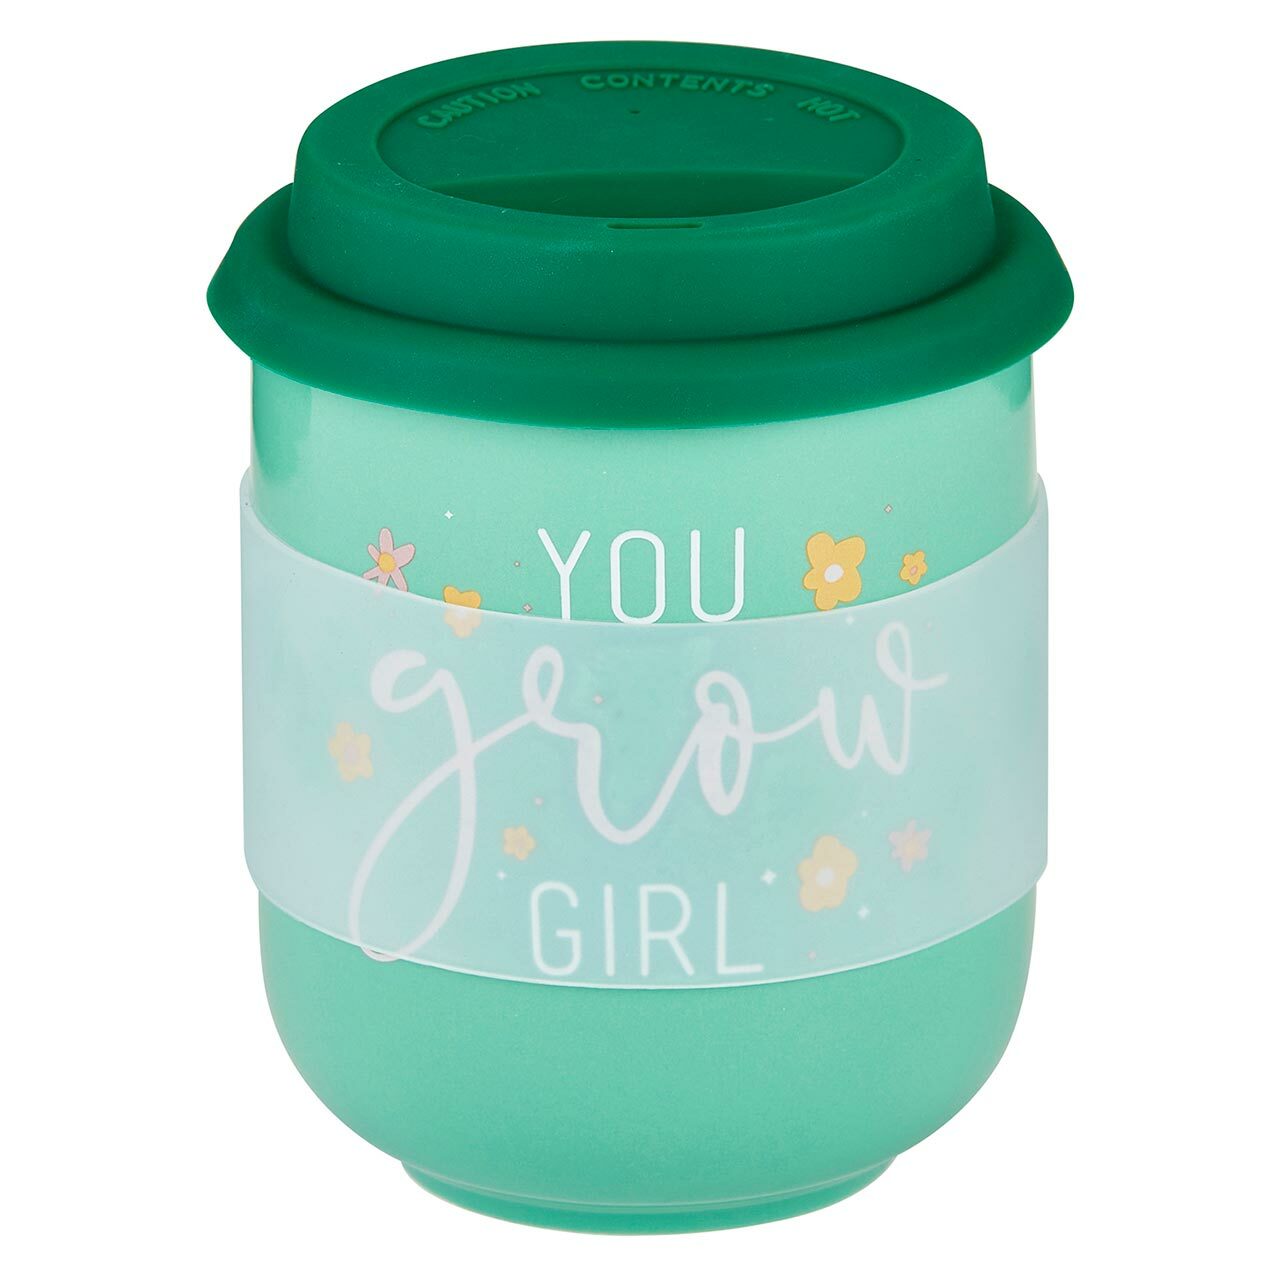 You Grow Girl Ceramic To Go Mug | Holds 16 oz. | Eco Mug with Silicone Lid and Sleeve